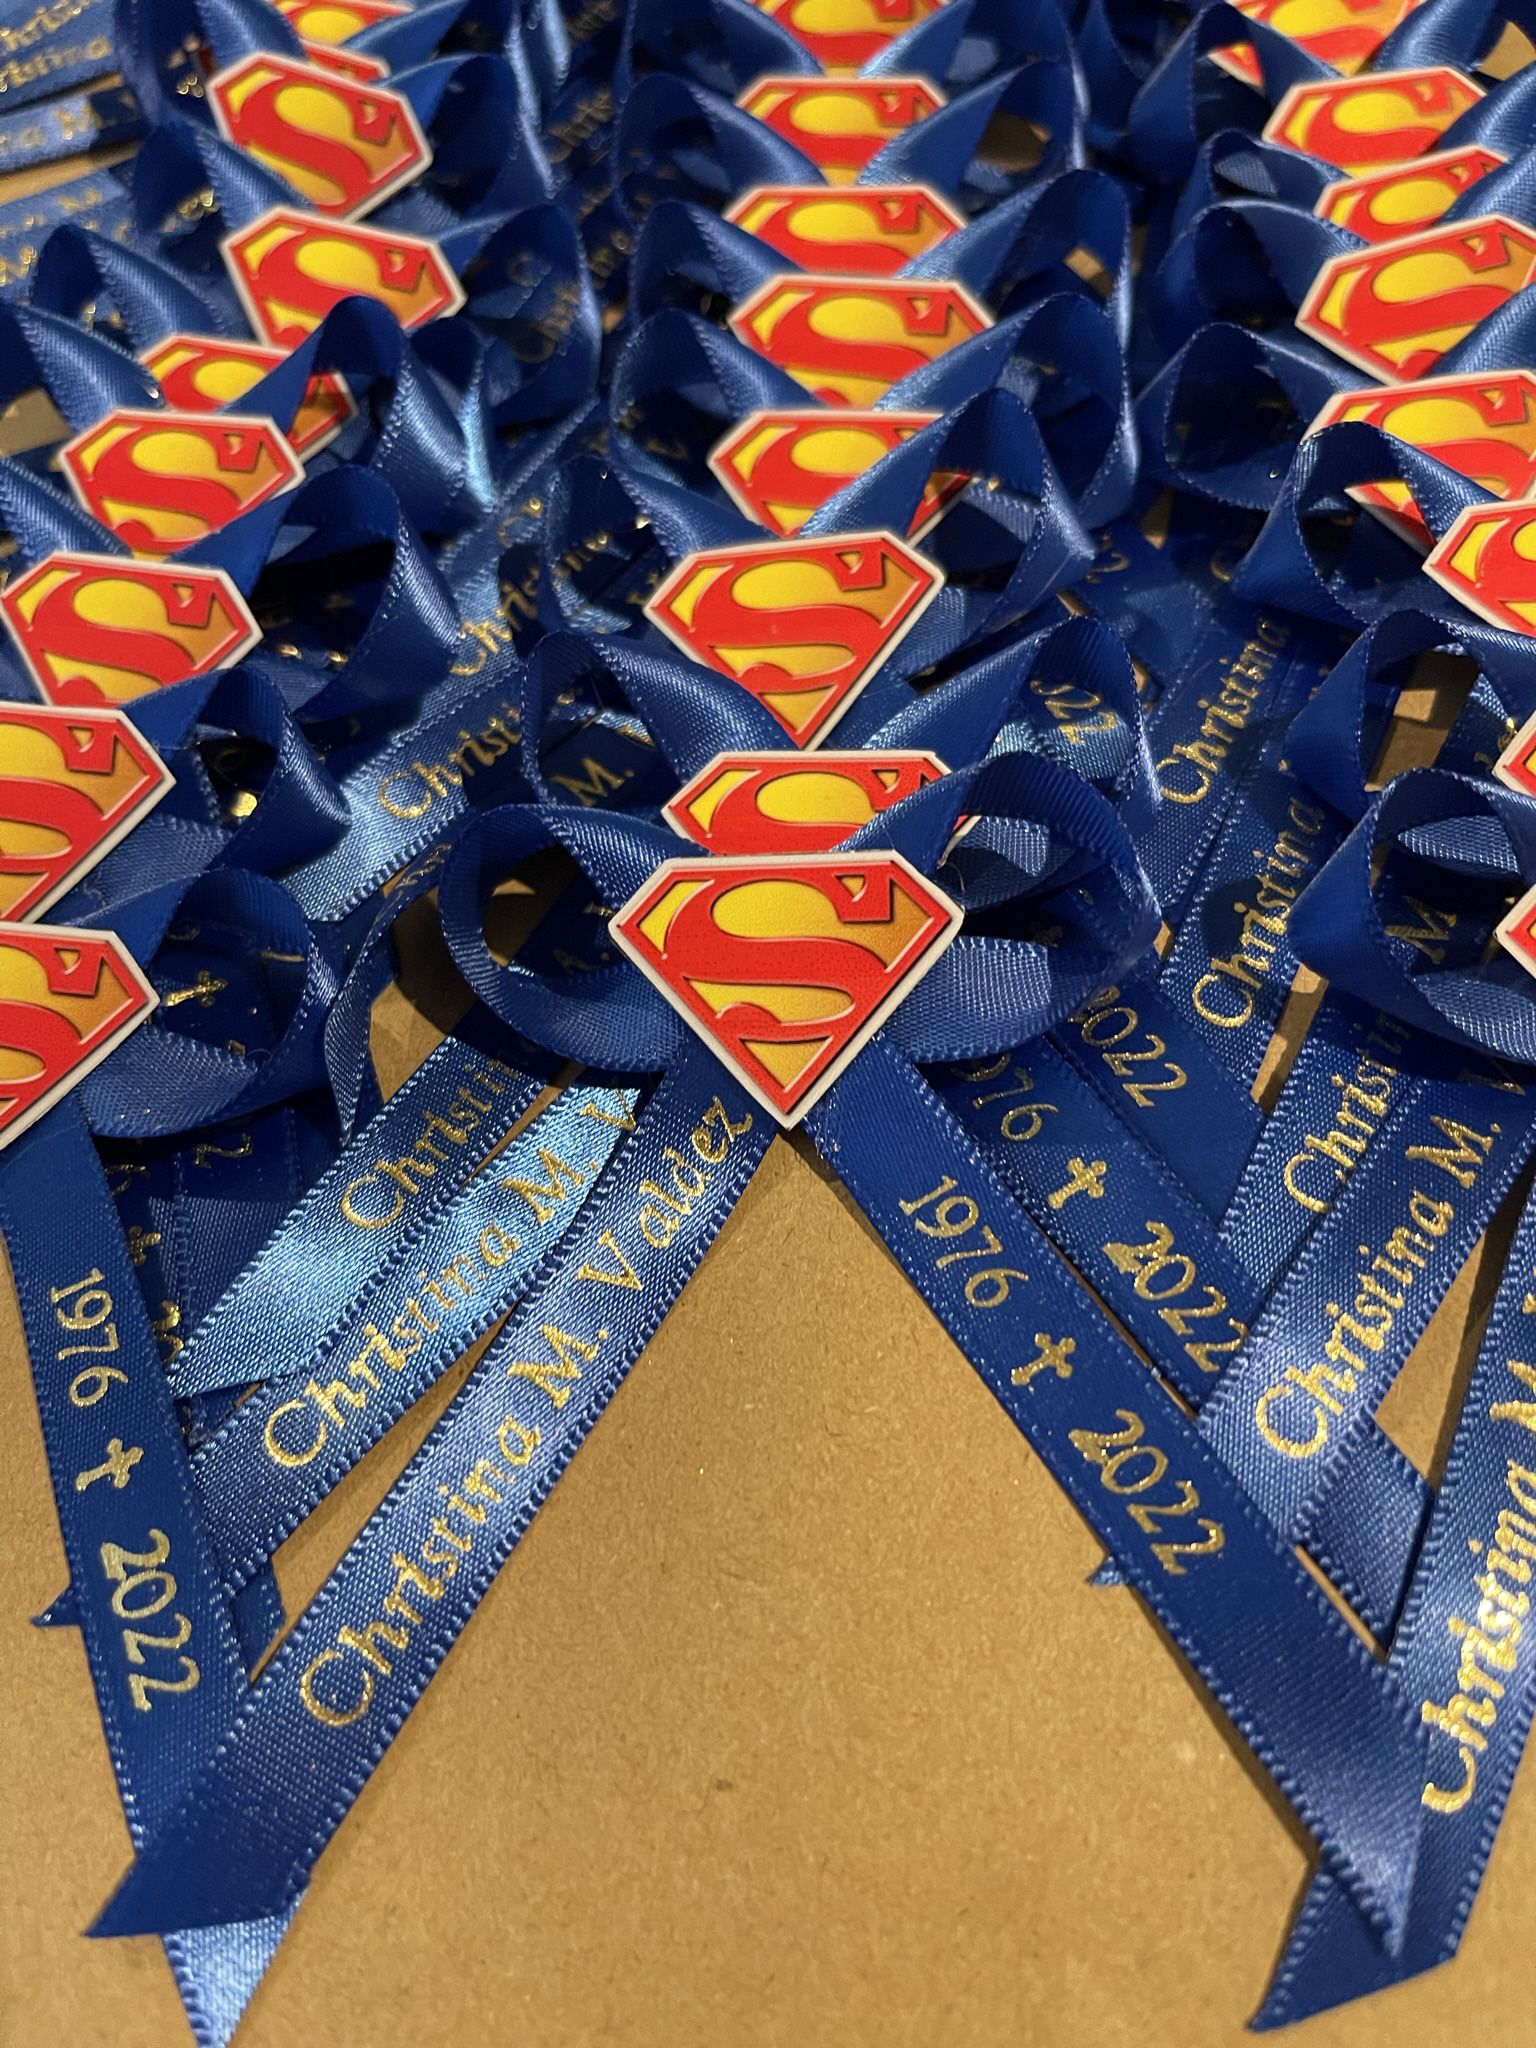 Custom Superhero Superman Ribbon Pins 